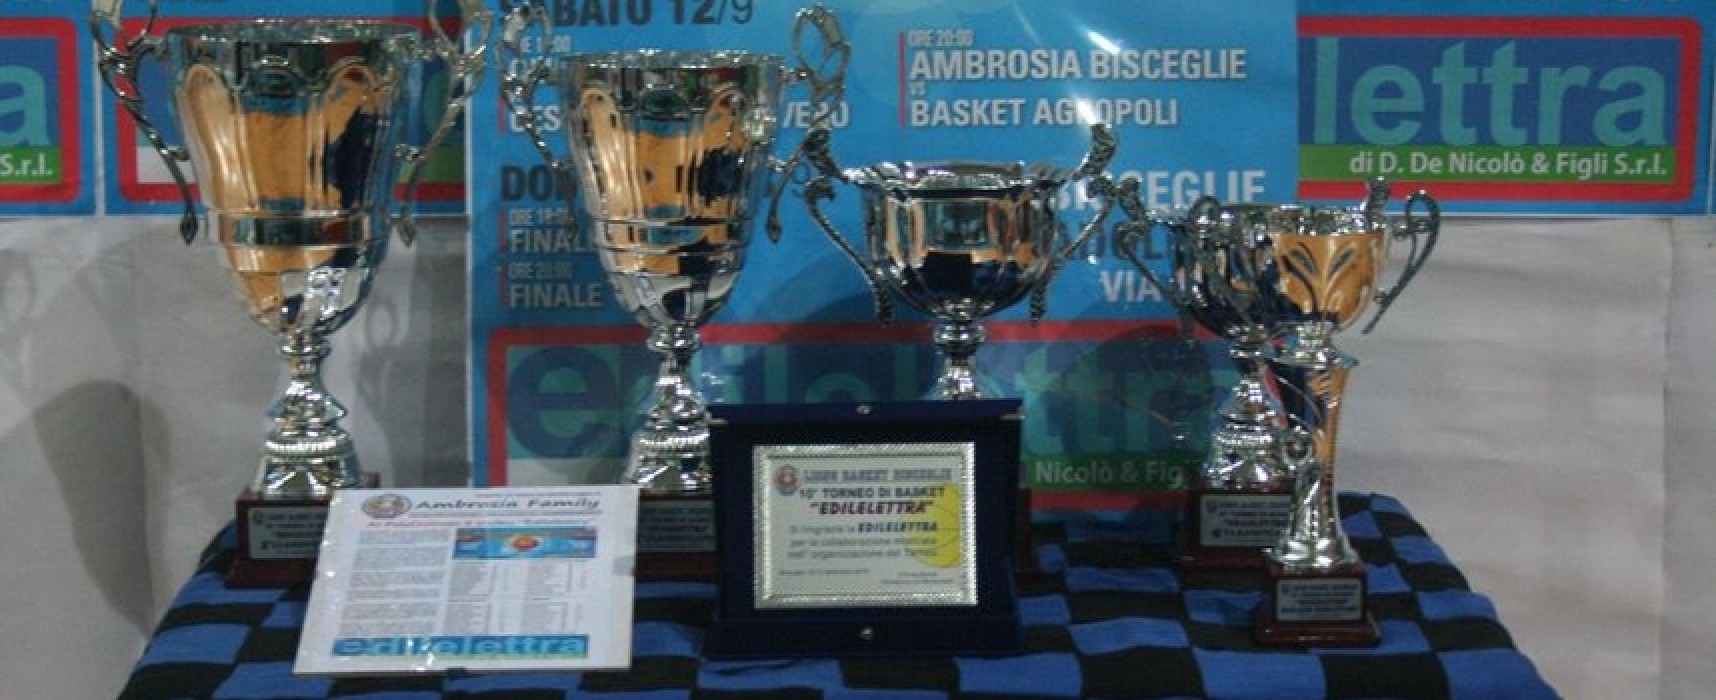 Trofeo Edilelettra: Ambrosia sconfitta in finale da San Severo/FOTO